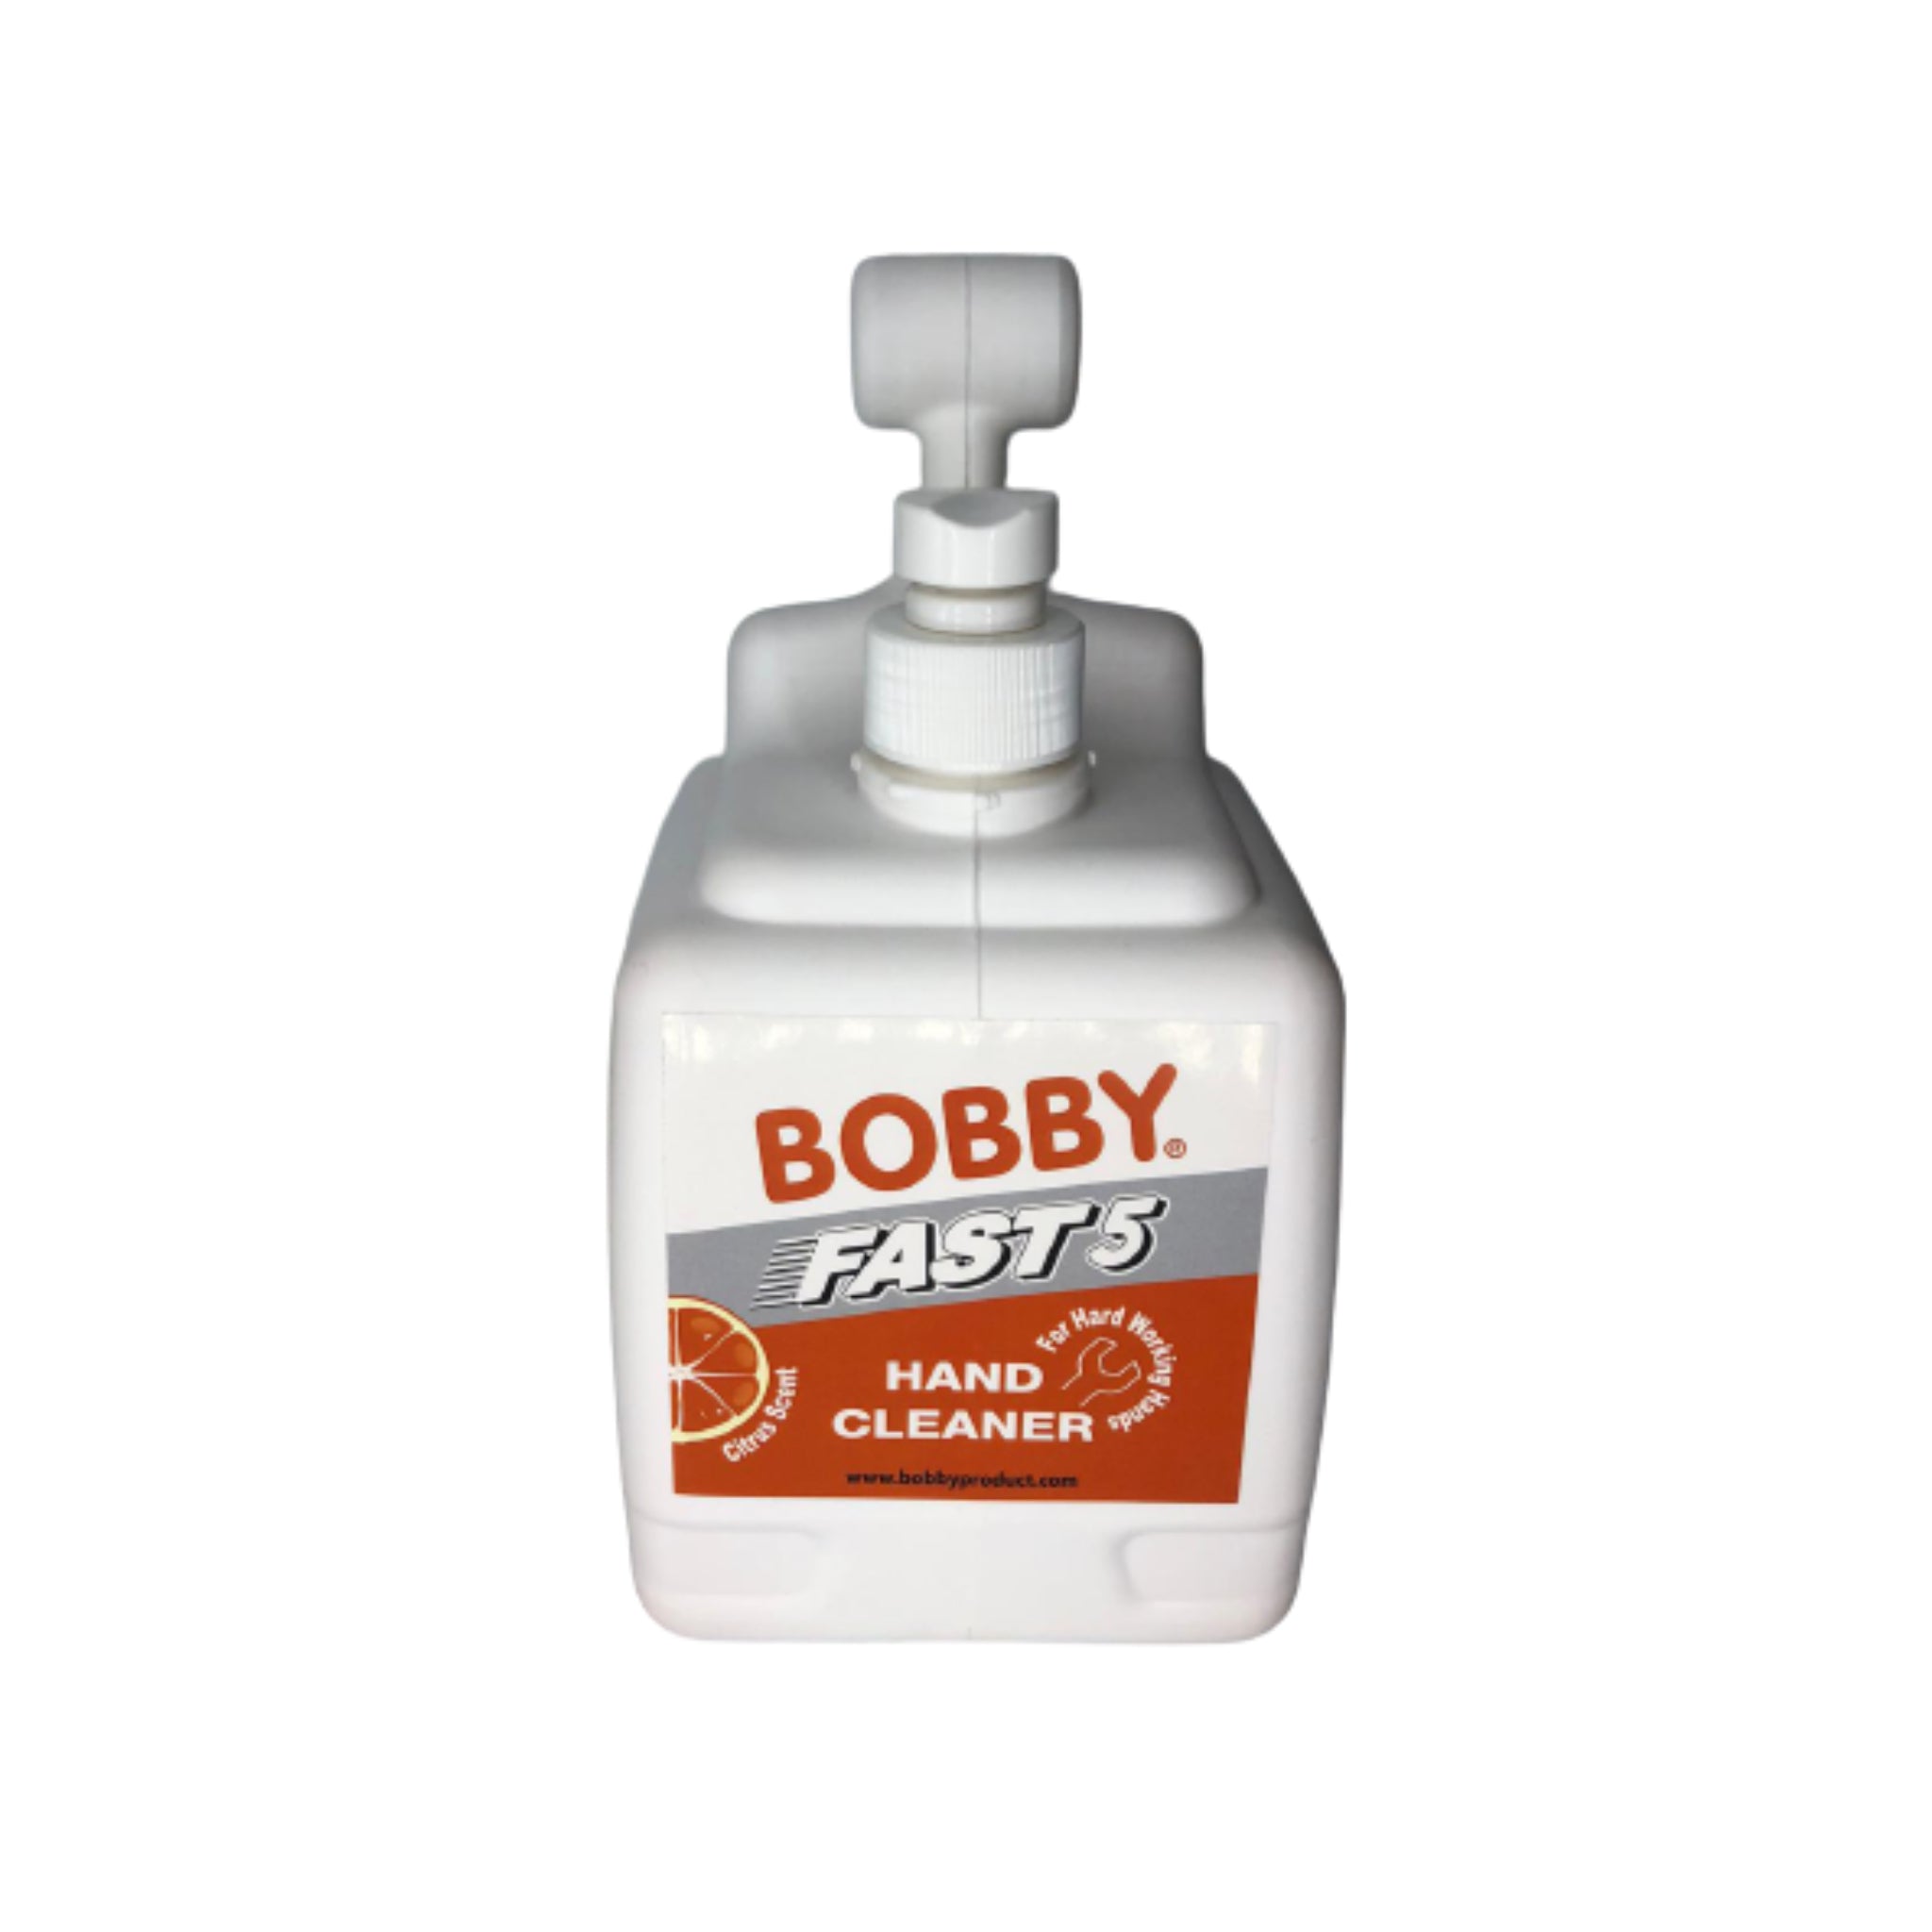 BOBBY Fast 5 Hand Cleaner 3LT